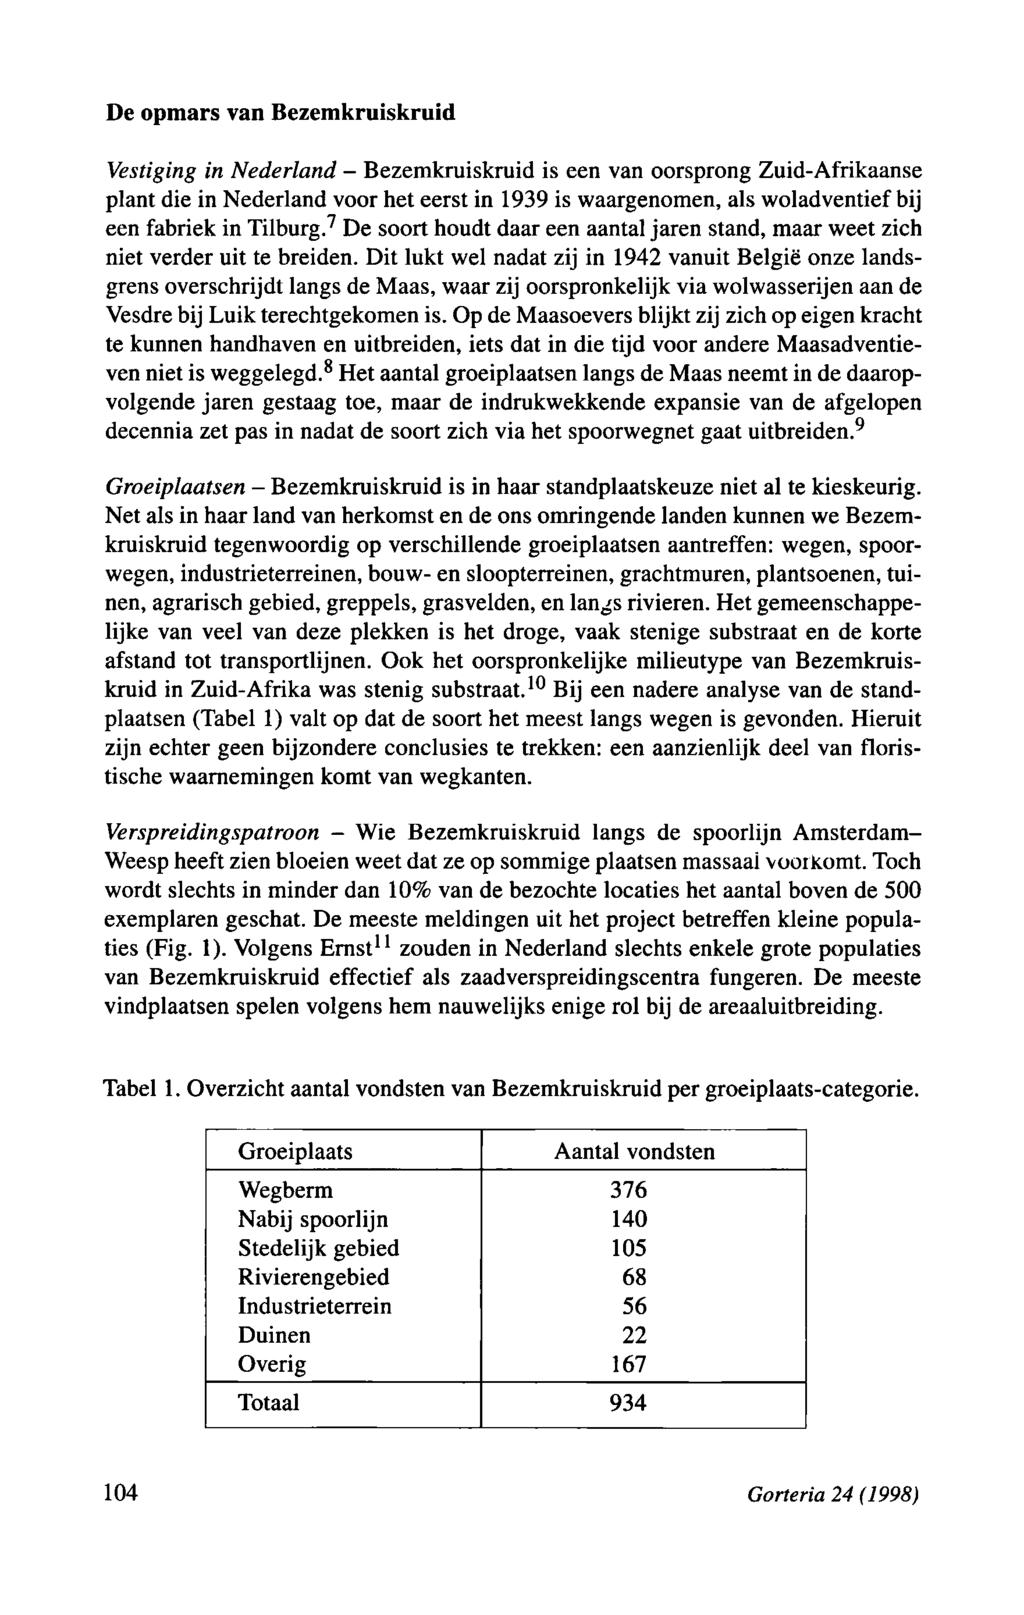 Bezemkruiskruid - Wie De opmars van Bezemkruiskruid Vestiging in Nederland - Bezemkruiskruid is een van oorsprong Zuid-Afrikaanse plant die in Nederland voor het eerst in 1939 is waargenomen, als